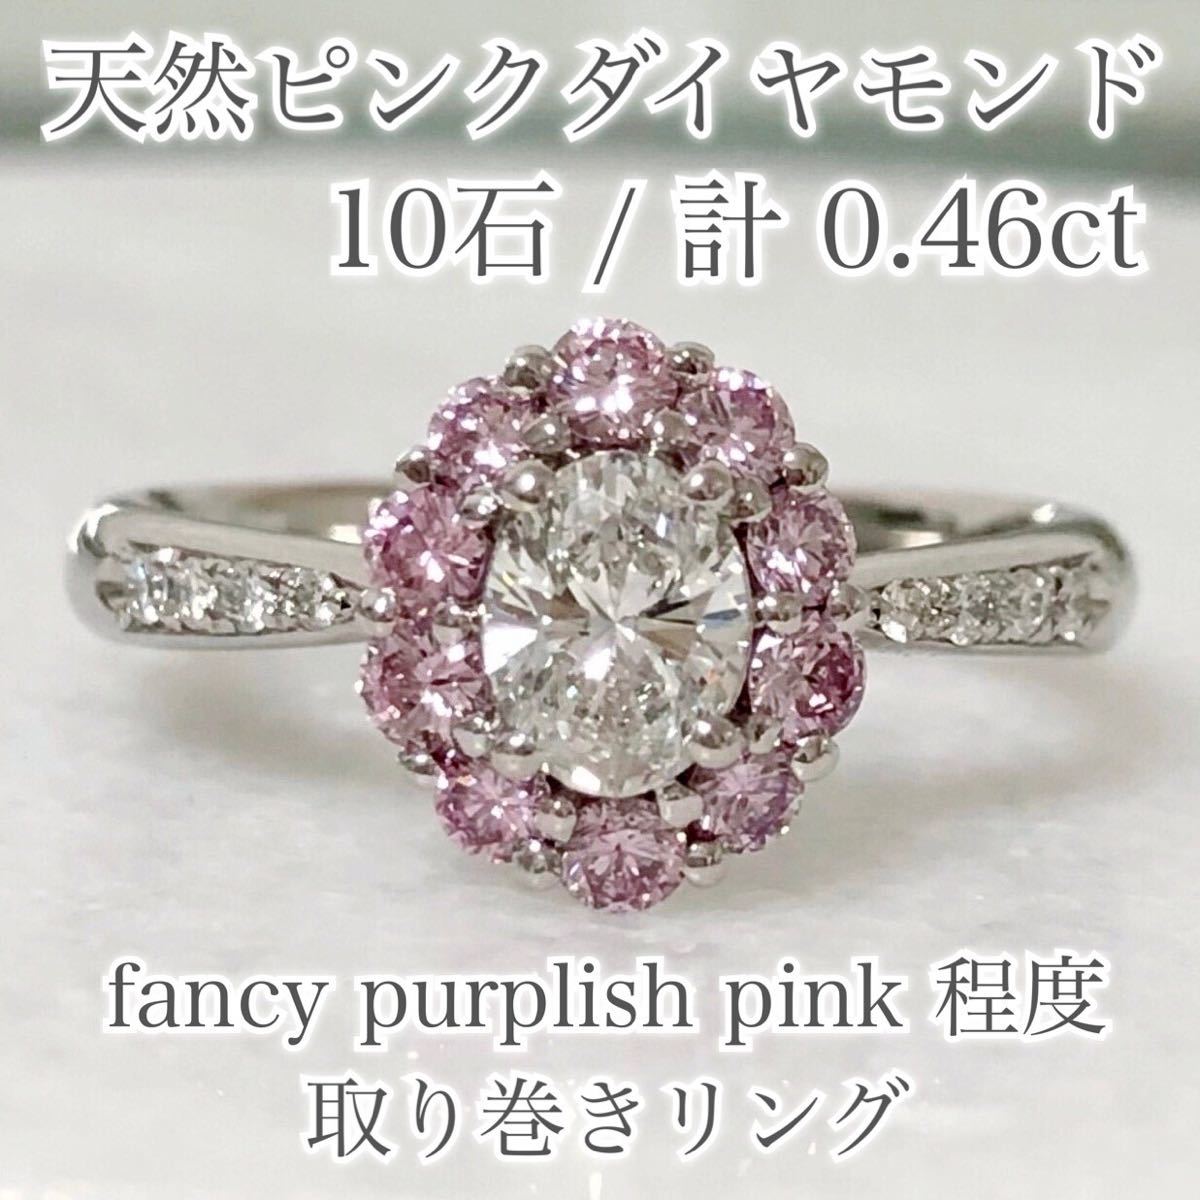 激安ブランド 濃い ピンクダイヤモンド 10石 計0.46ct fancy pink リング ピンクダイア hirota.com.br